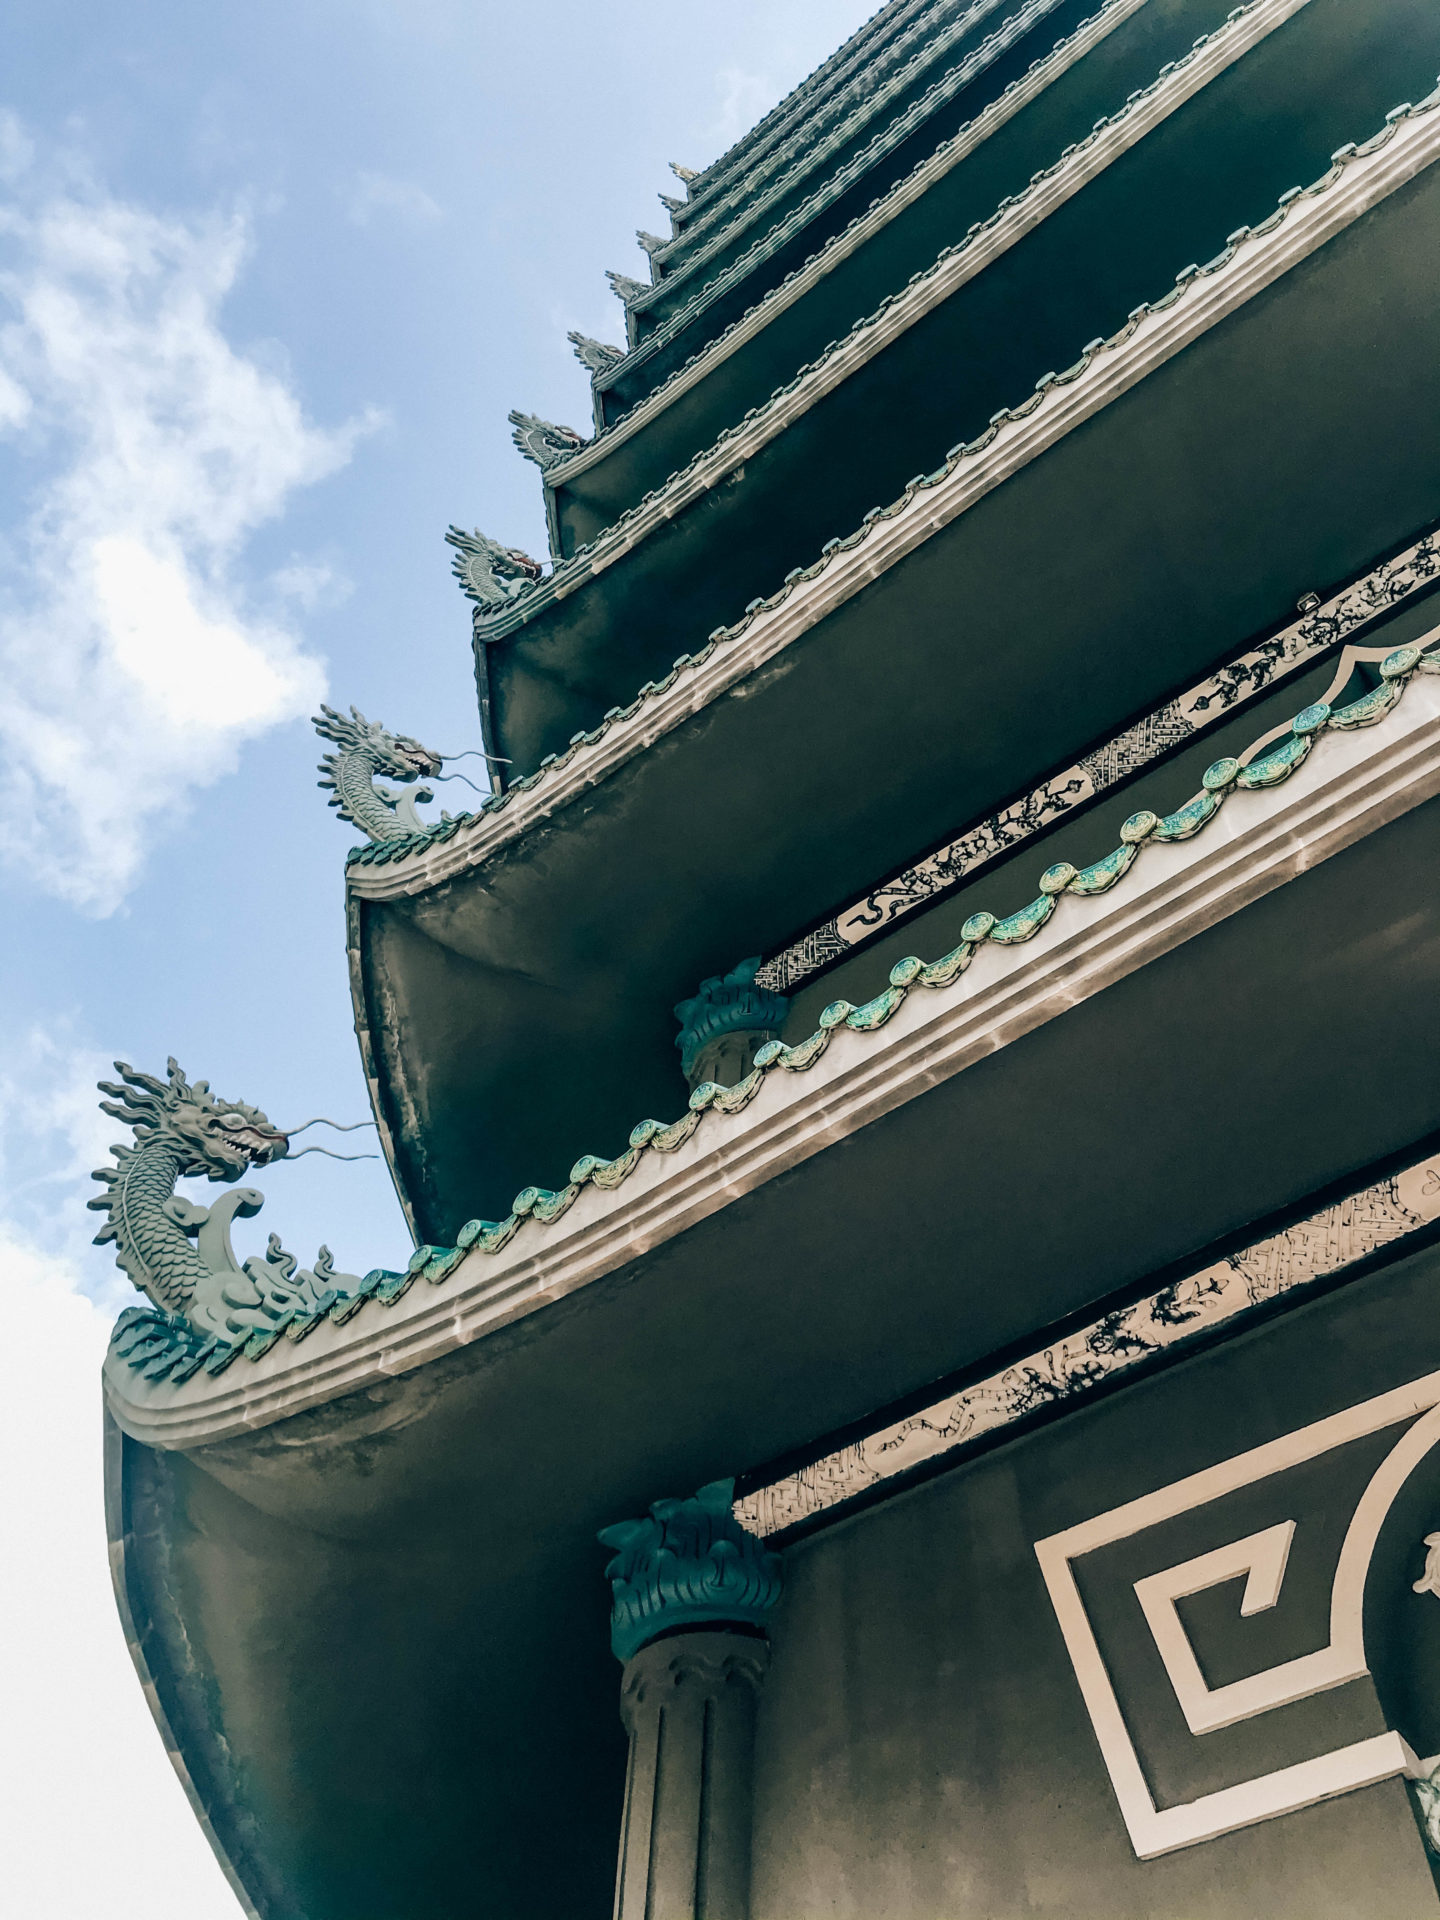 Architecture et toits en forme de dragon à la pagode Linh Ung de Da Nang